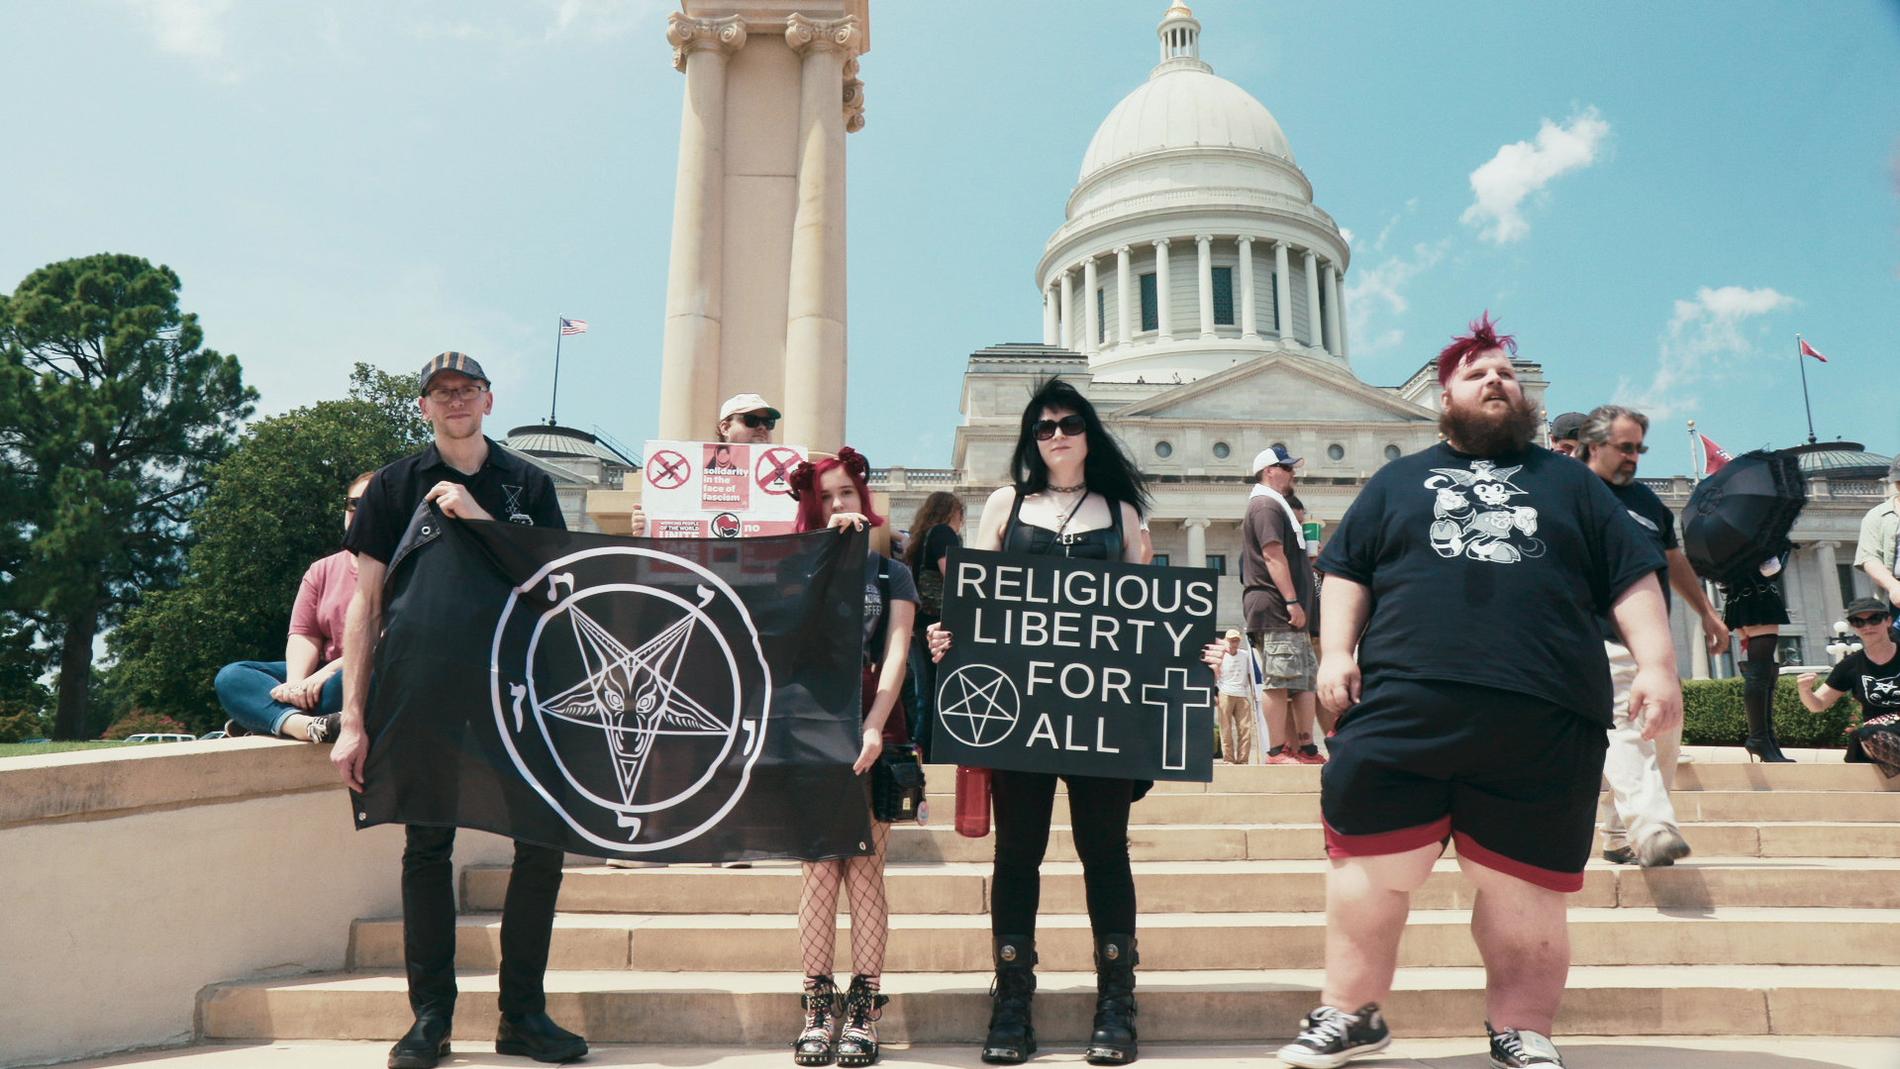 I filmen "Hail, Satan?" skildas den satanistiska rörelsen The Satanic Temple", dess medlemmar och deras politiska kamp. Pressbild.